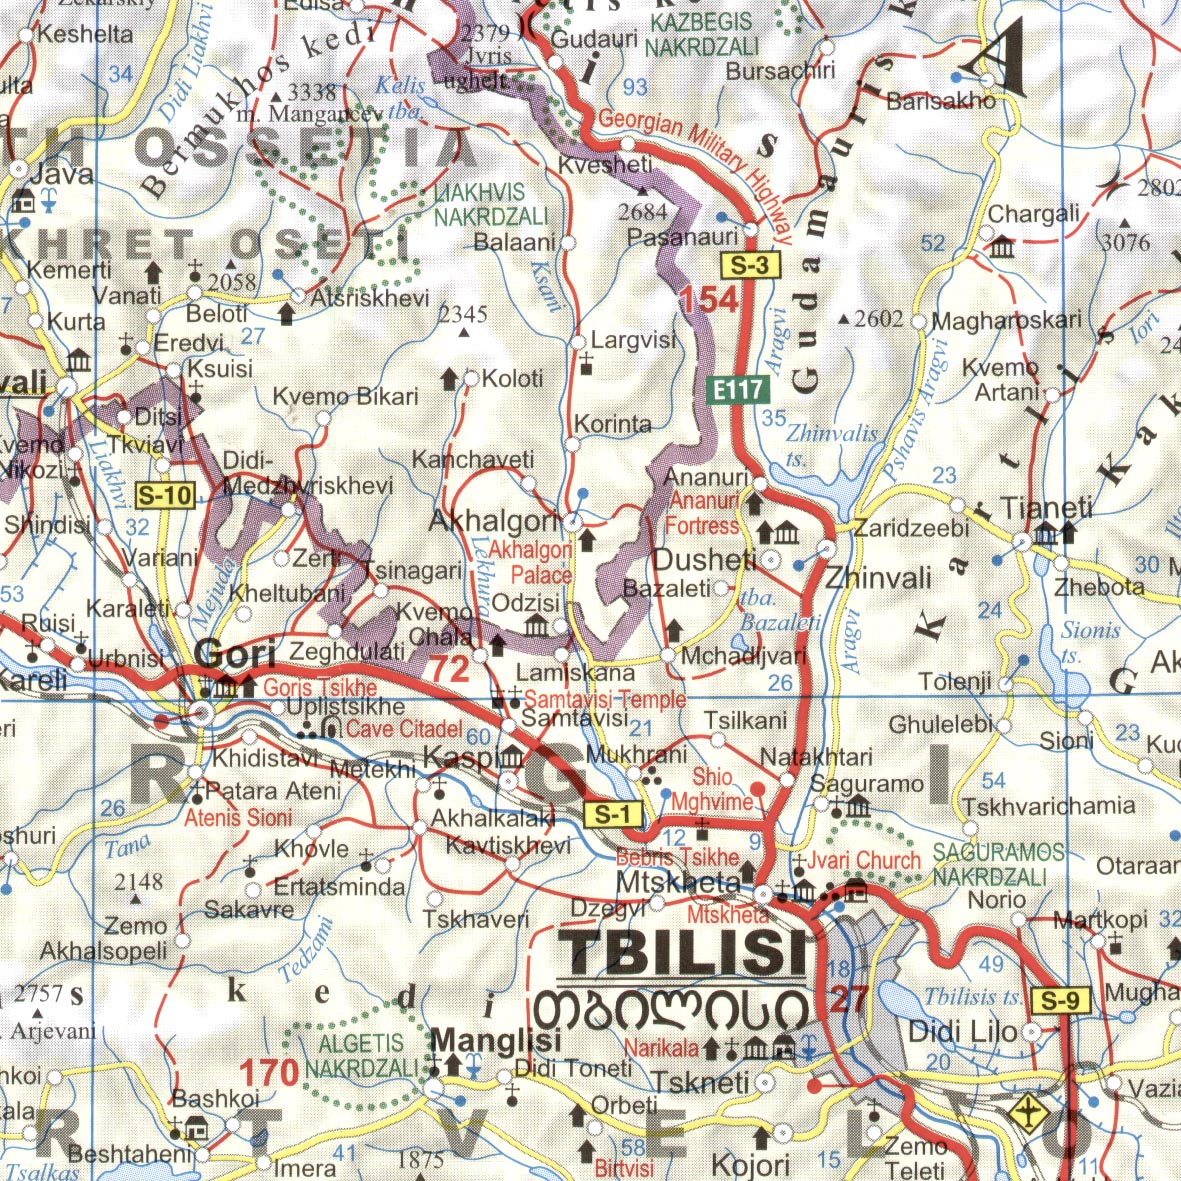 Caucasus (road) map sample